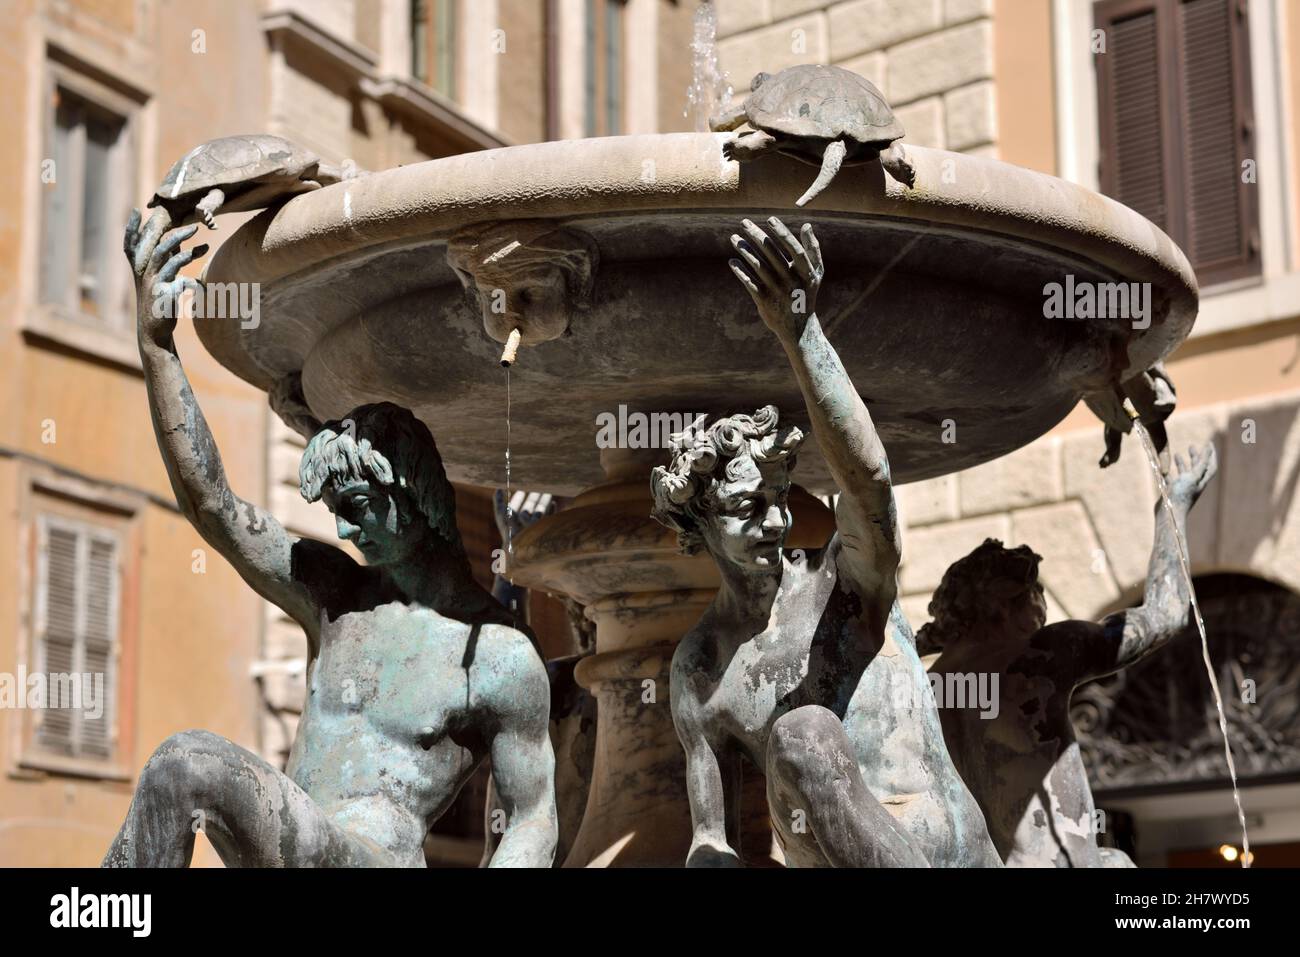 italy, rome, jewish ghetto, piazza mattei, fontana delle tartarughe Stock Photo